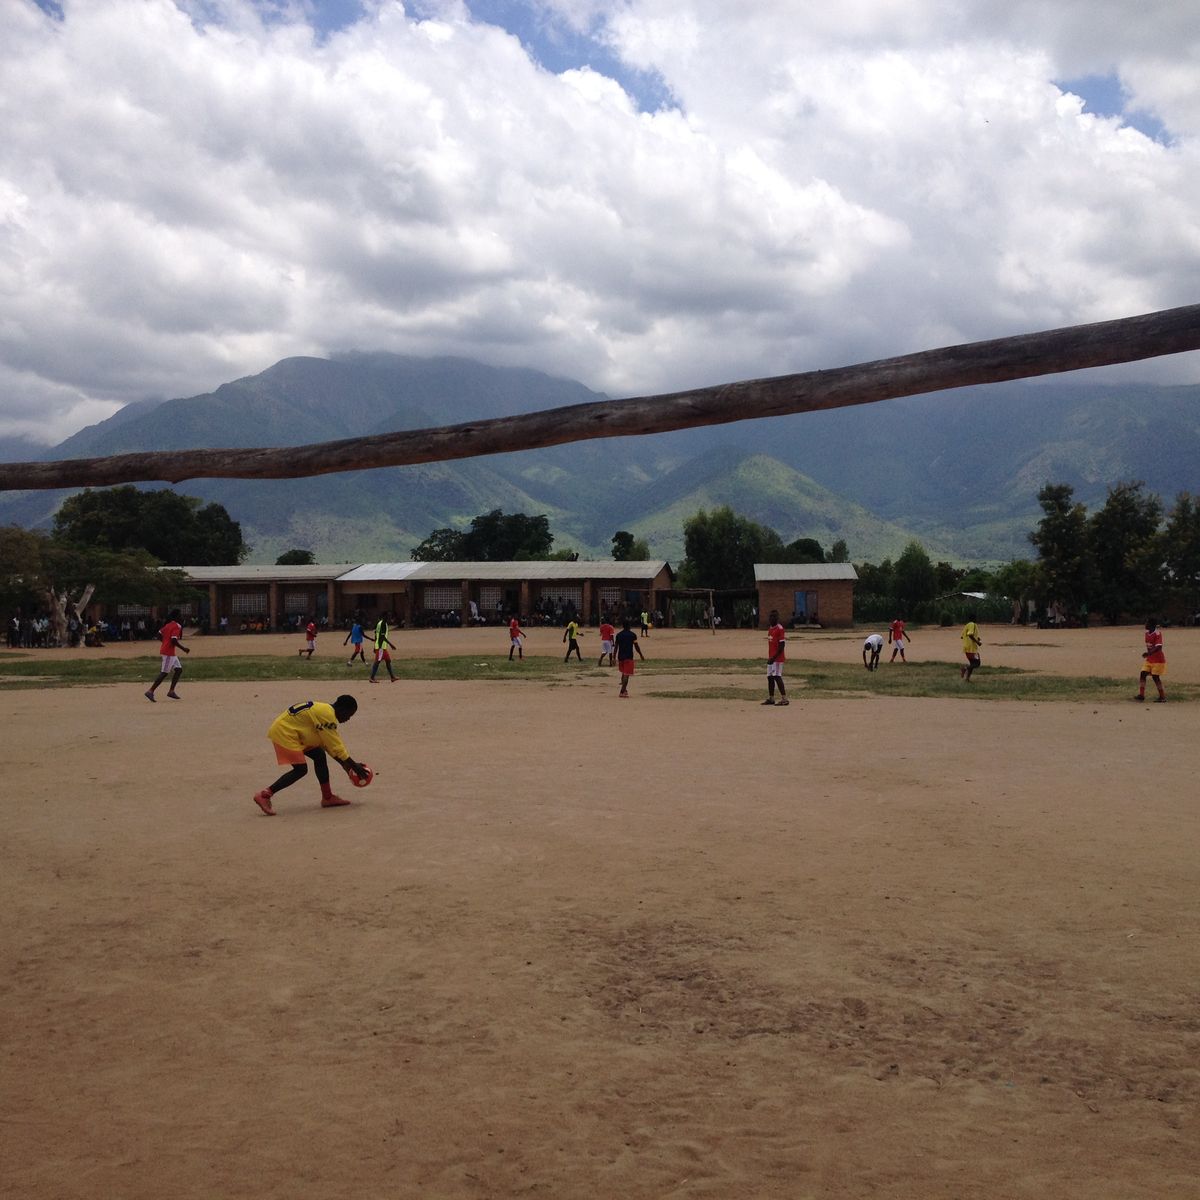 Spirit of Football in Malawi: Foto: Patrick Föllmer